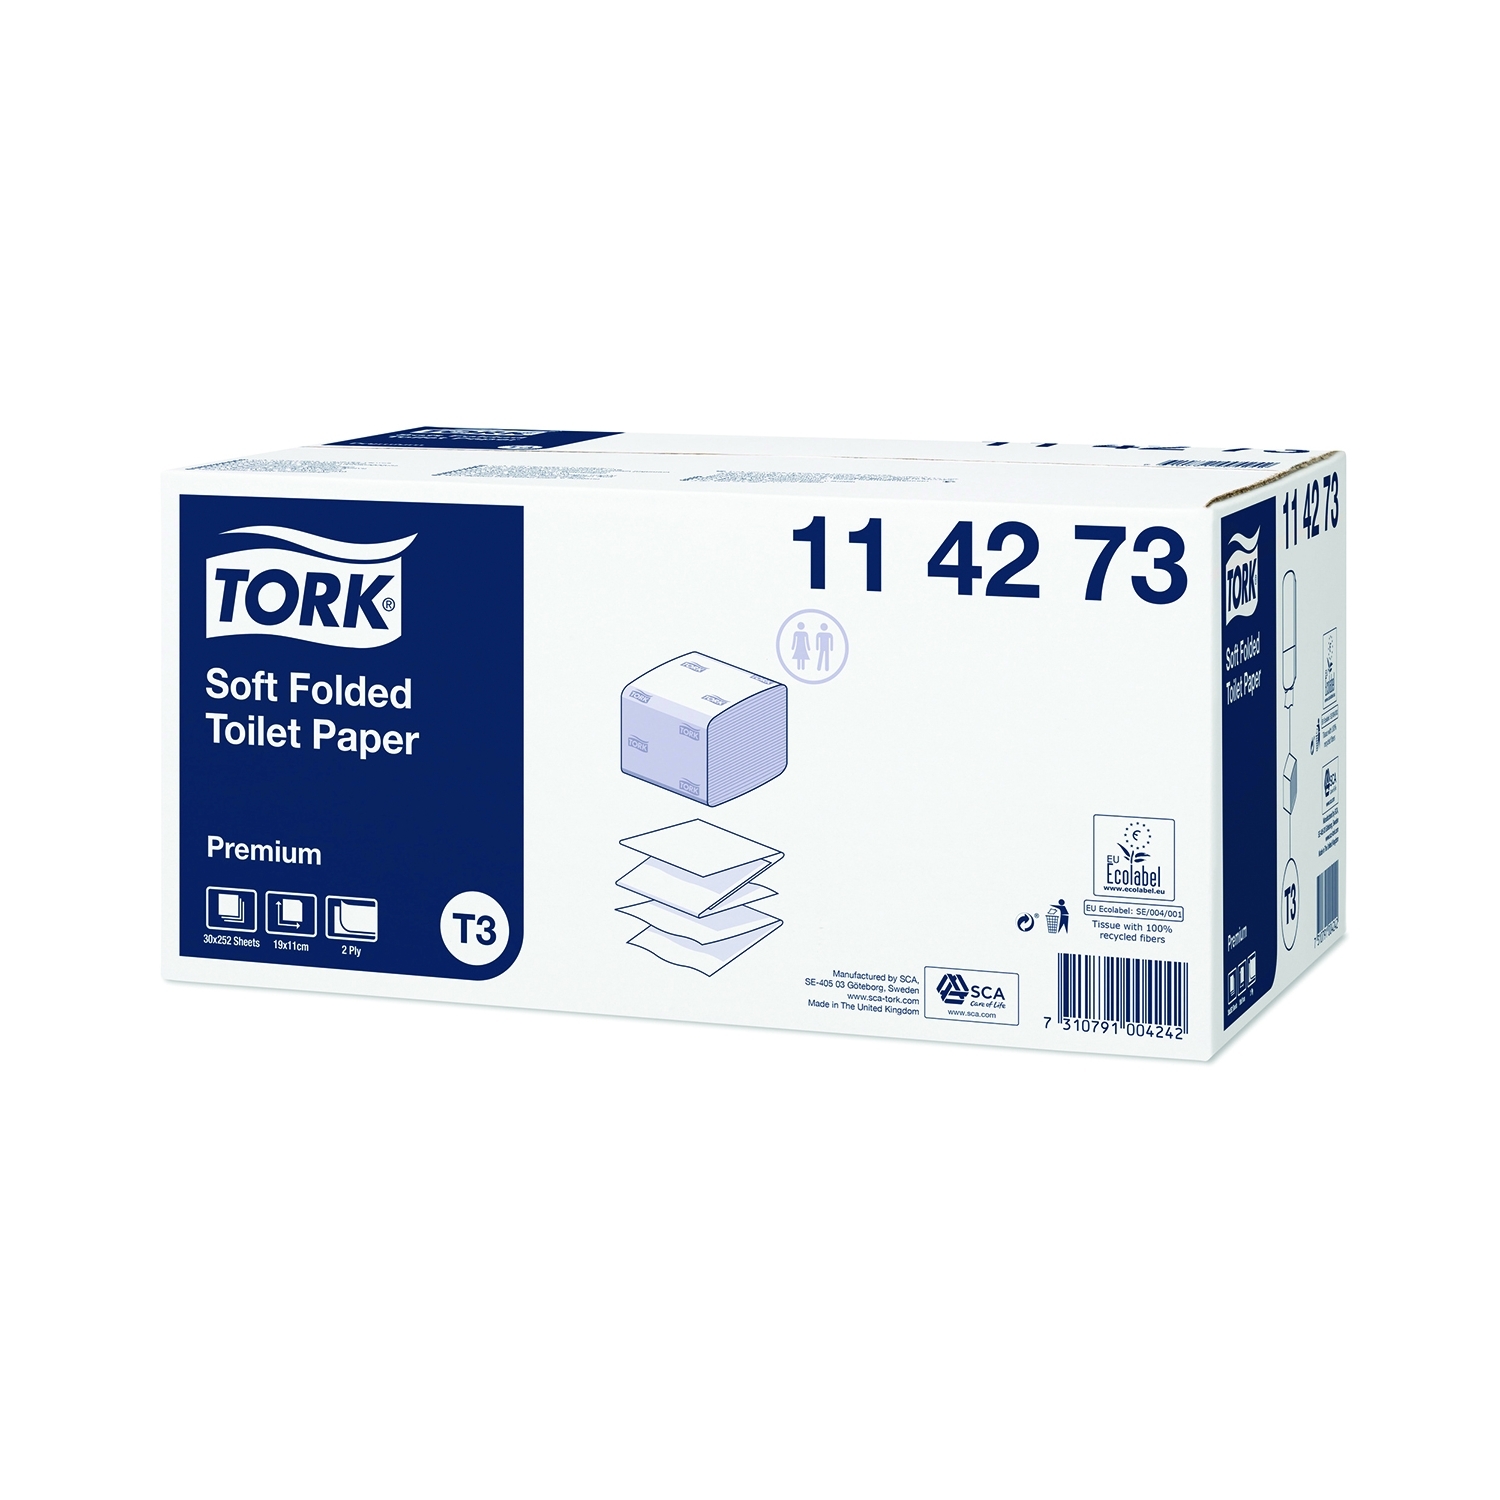 TORK toiletpapier T3 - soft - gevouwen 2 lagen - karton (30 x 252 vel.)